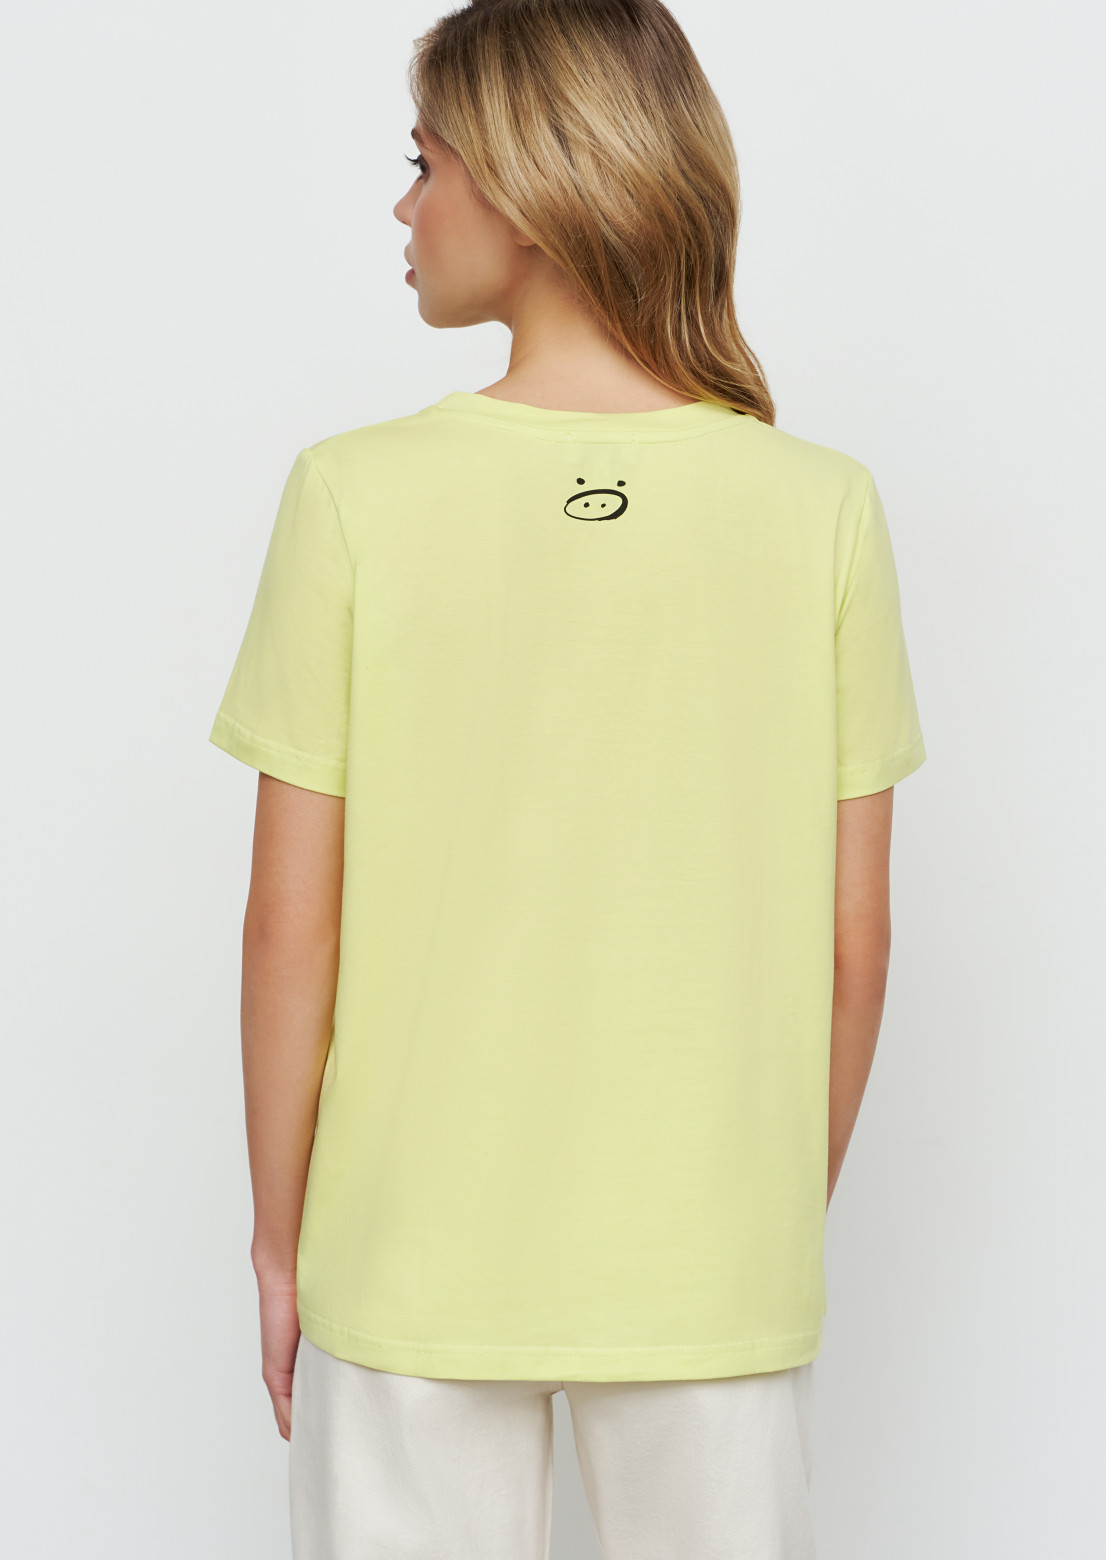 Lemony blank T-shirt